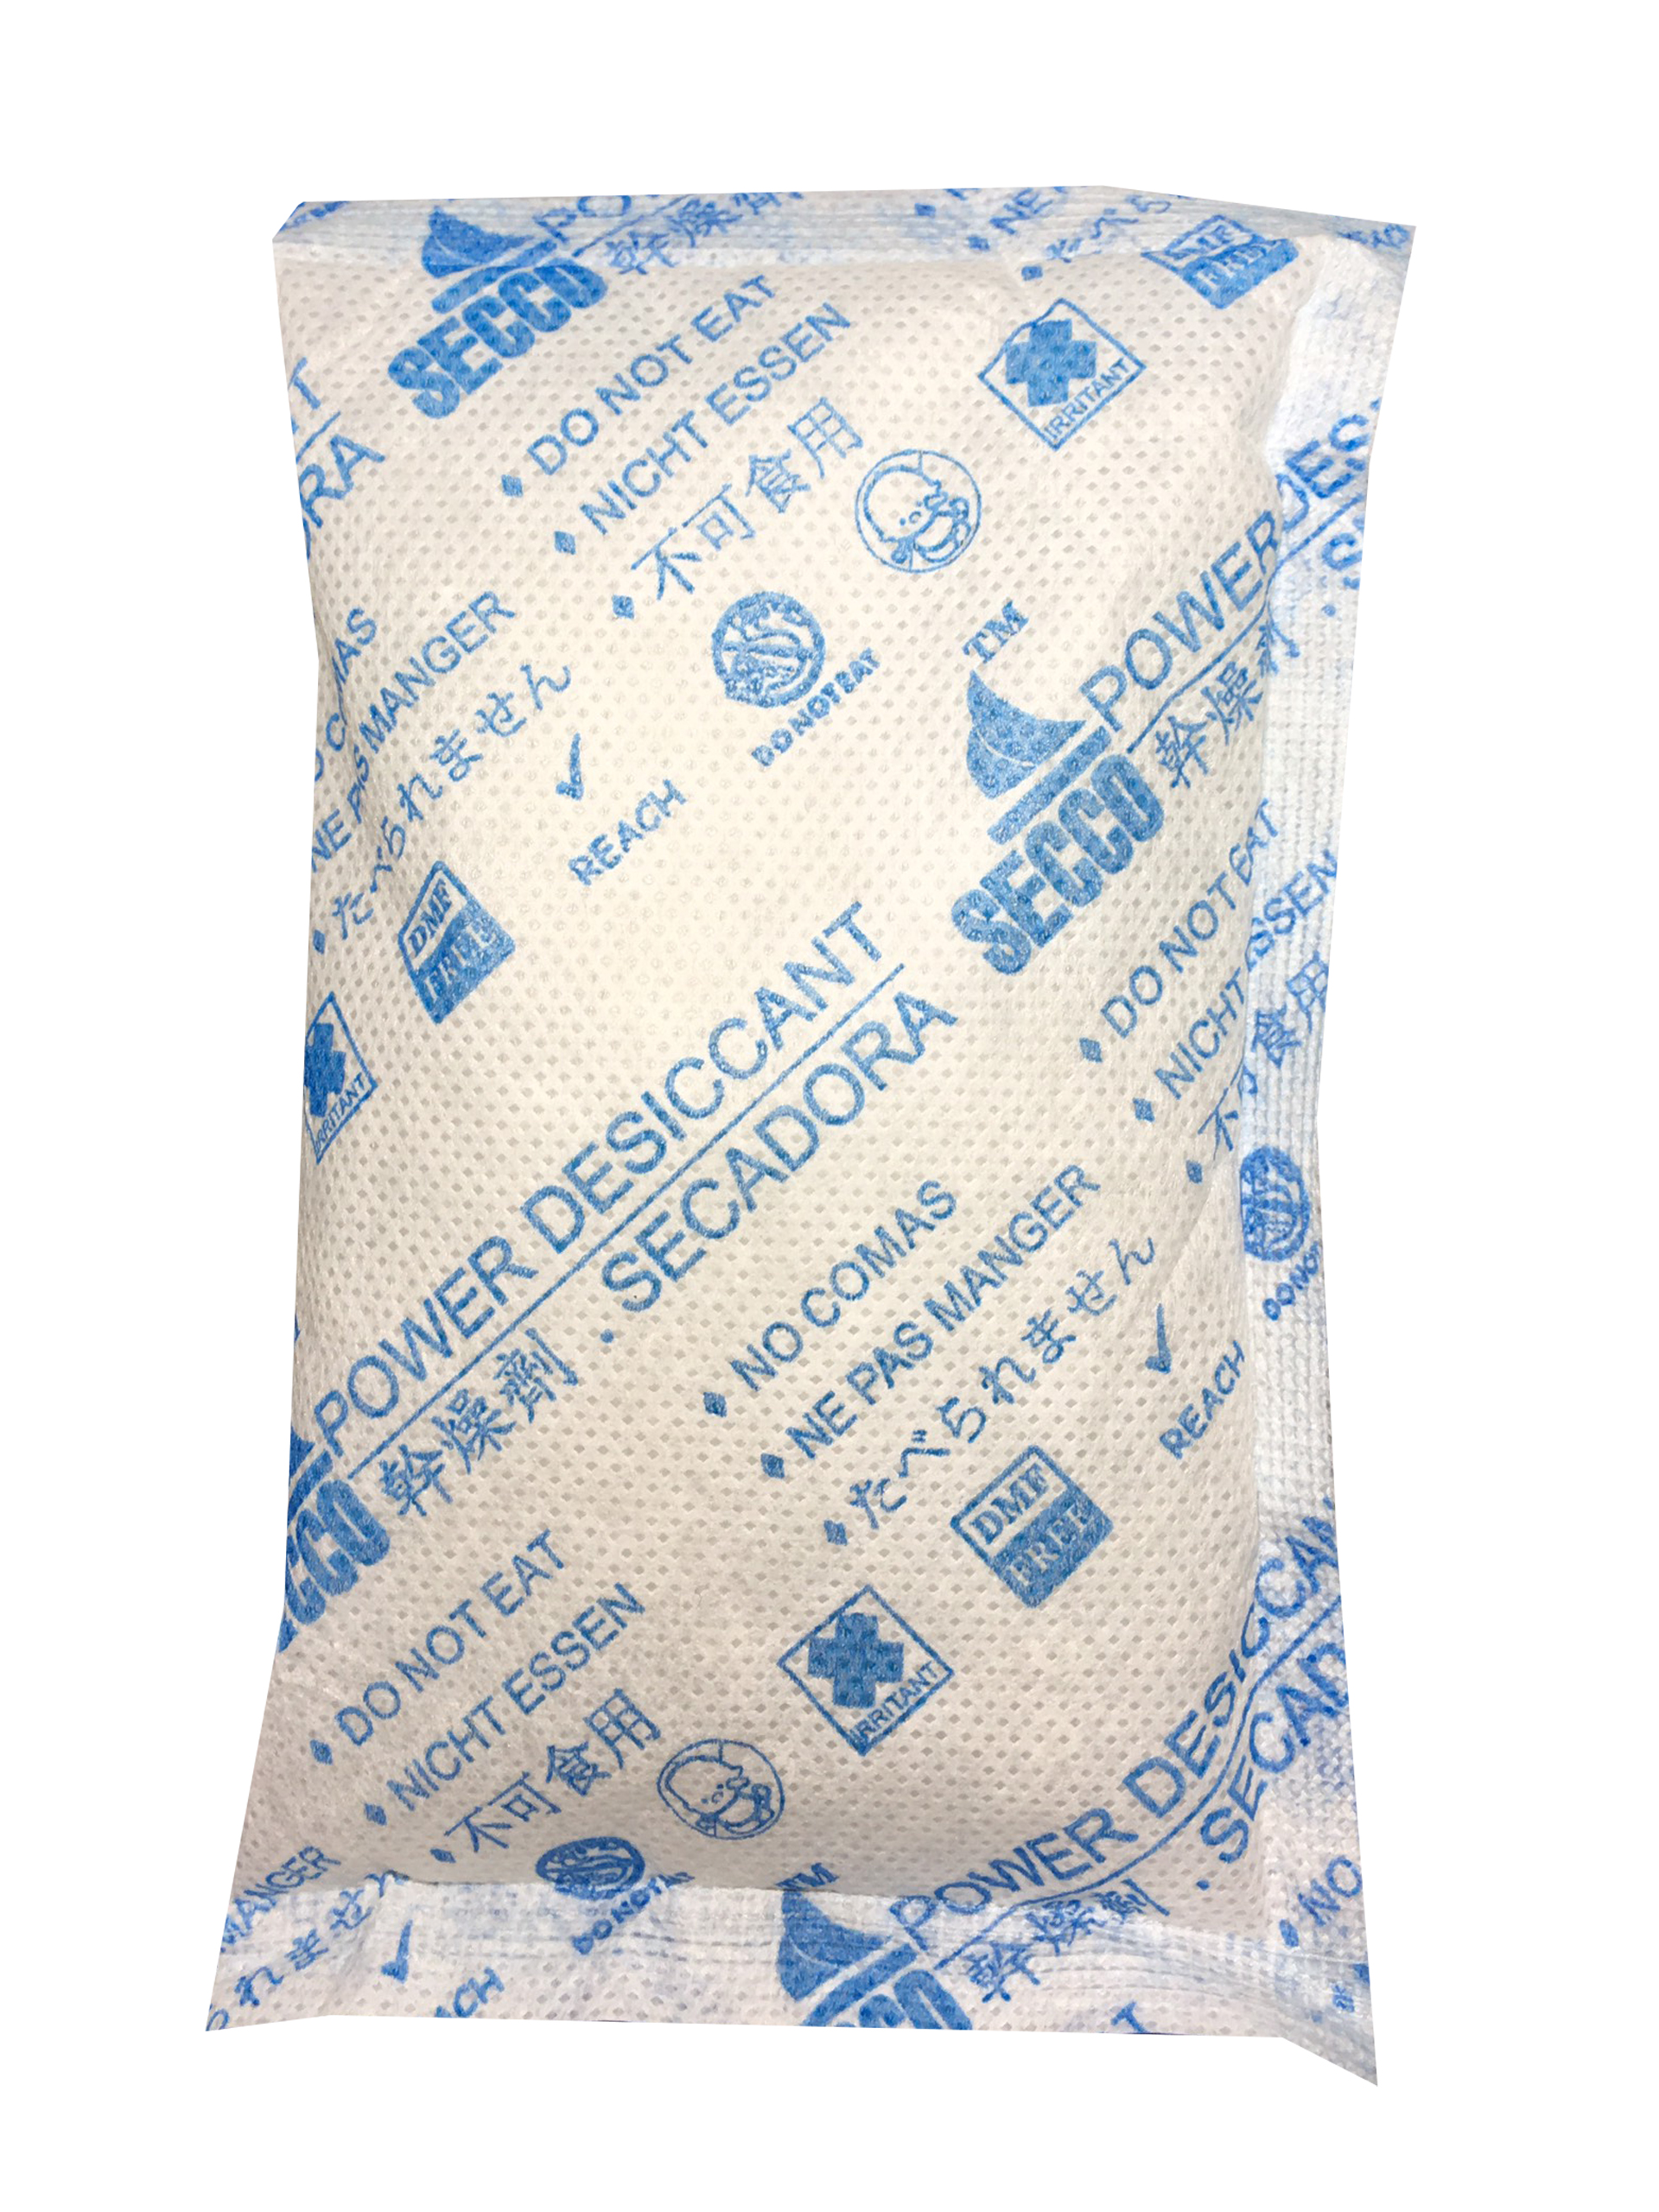 Gói hút ẩm Secco silica gel 100gr  - 1kg(10 gói) - bảo quản thiết bị điện tử, máy ảnh không ẩm móc - Chính hãng - Vải trắng - Chữ to xanh 2 mặt.